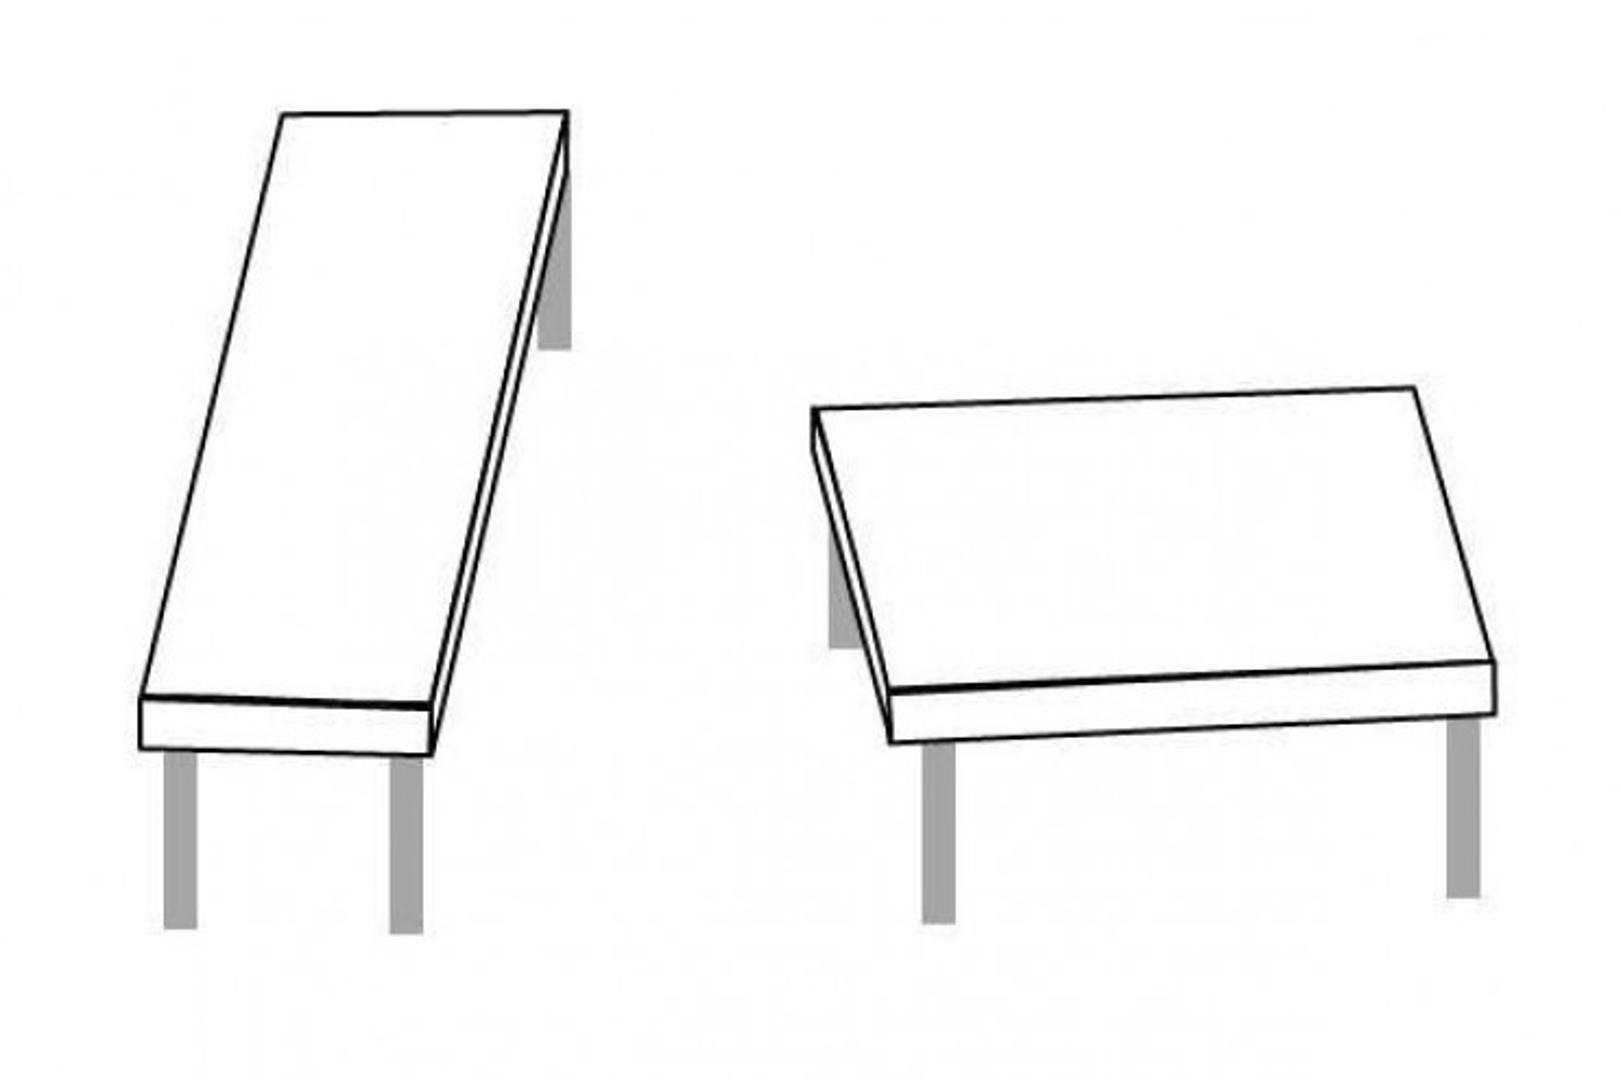 Shepardovi stolovi još su jedan zabavan primjer trikova optičke iluzije. Mislili ste da je riječ o stolovim različitih veličina?  Pogrešno - zapravo su iste veličine, ali u različitim orijentacijama.